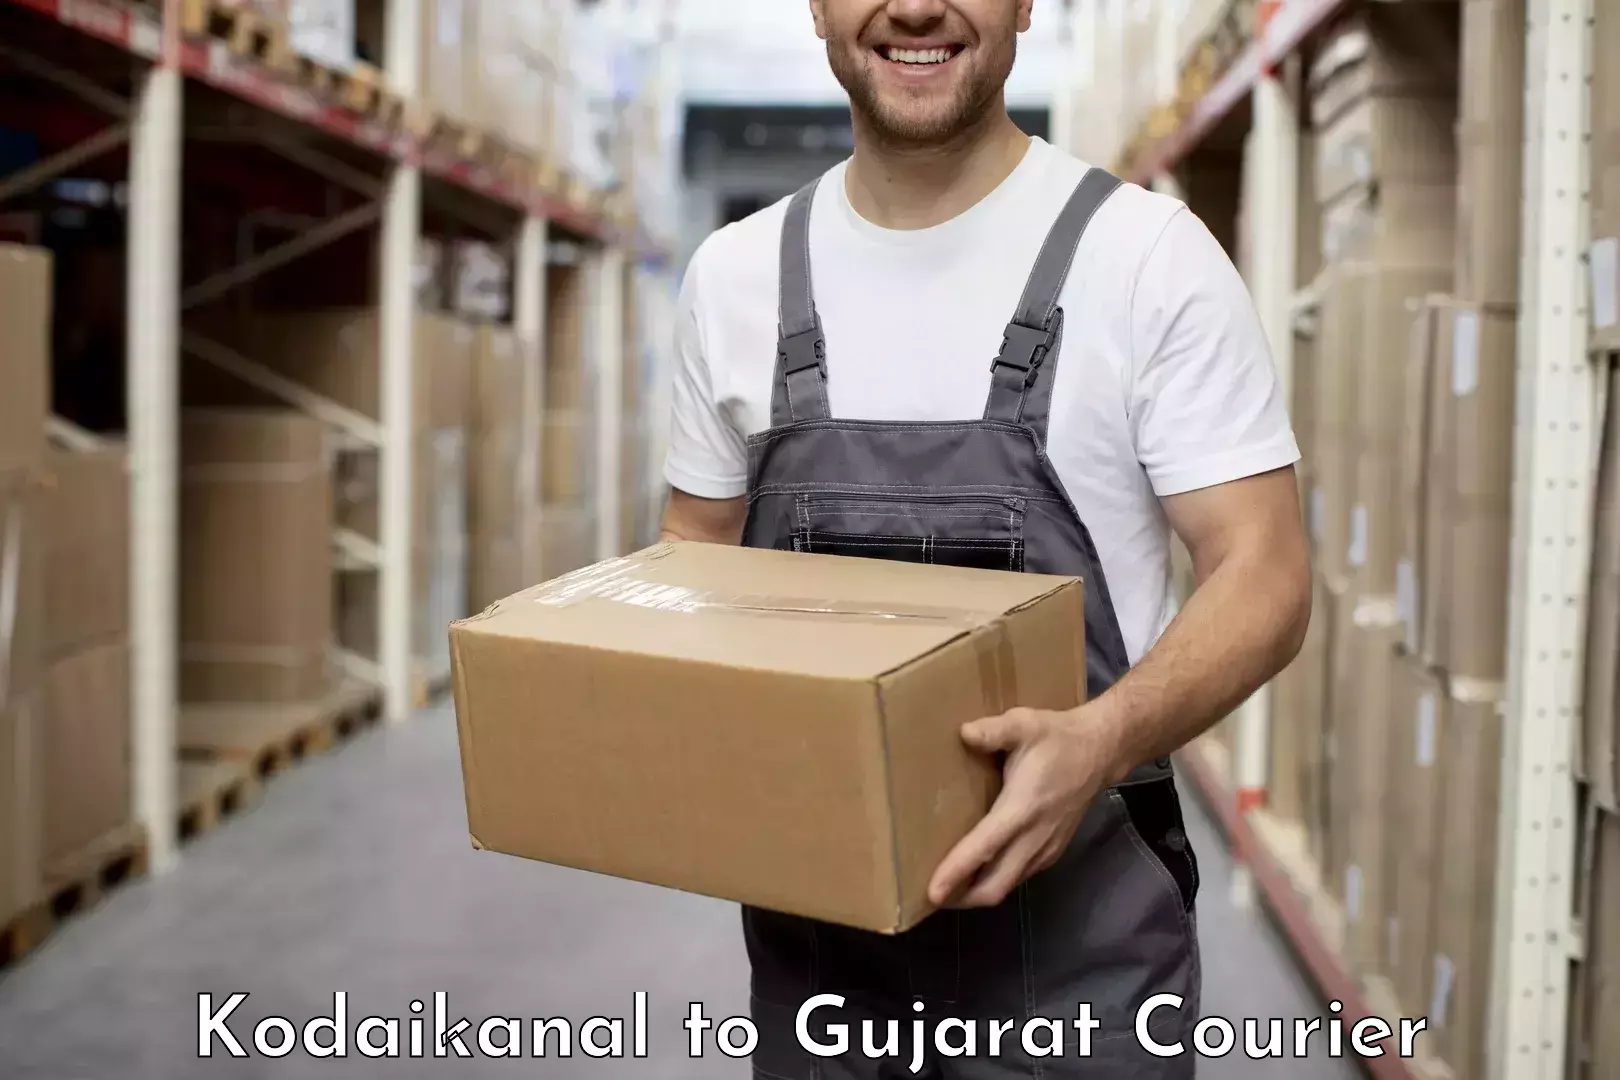 Logistics service provider Kodaikanal to IIIT Surat